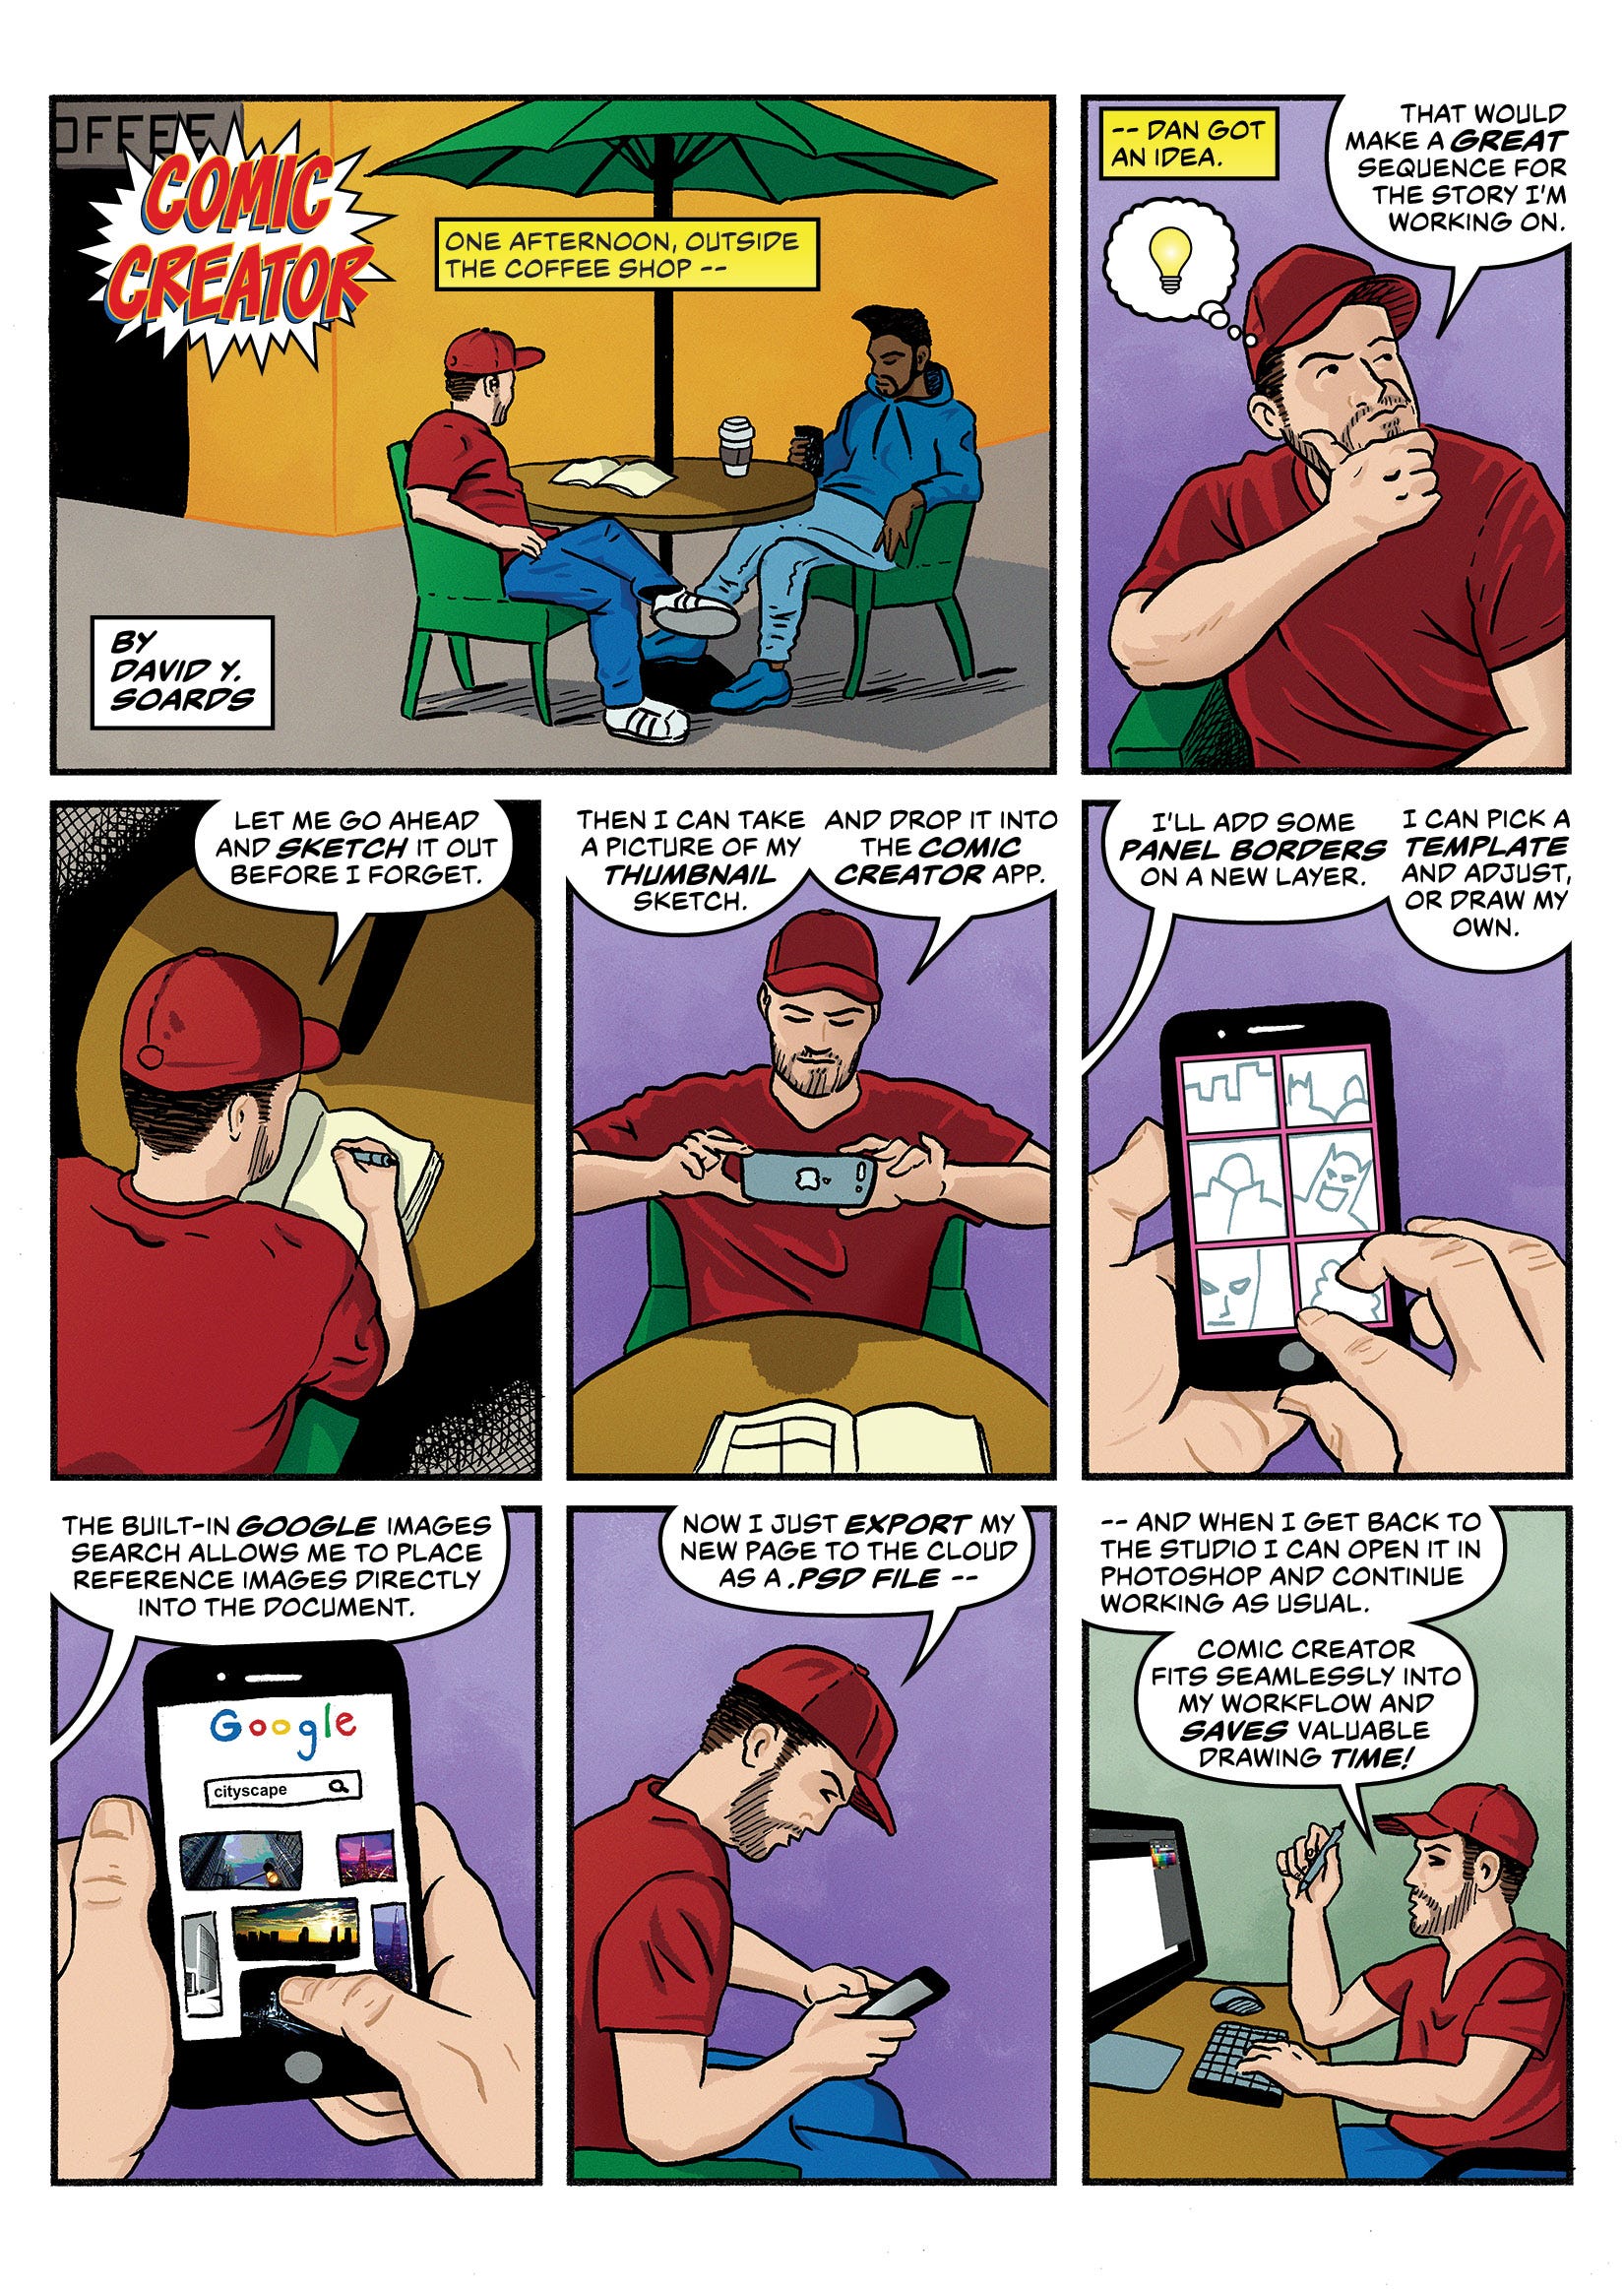 Designing the Comic Creator Mobile App | by David Y. Soards | Prototypr